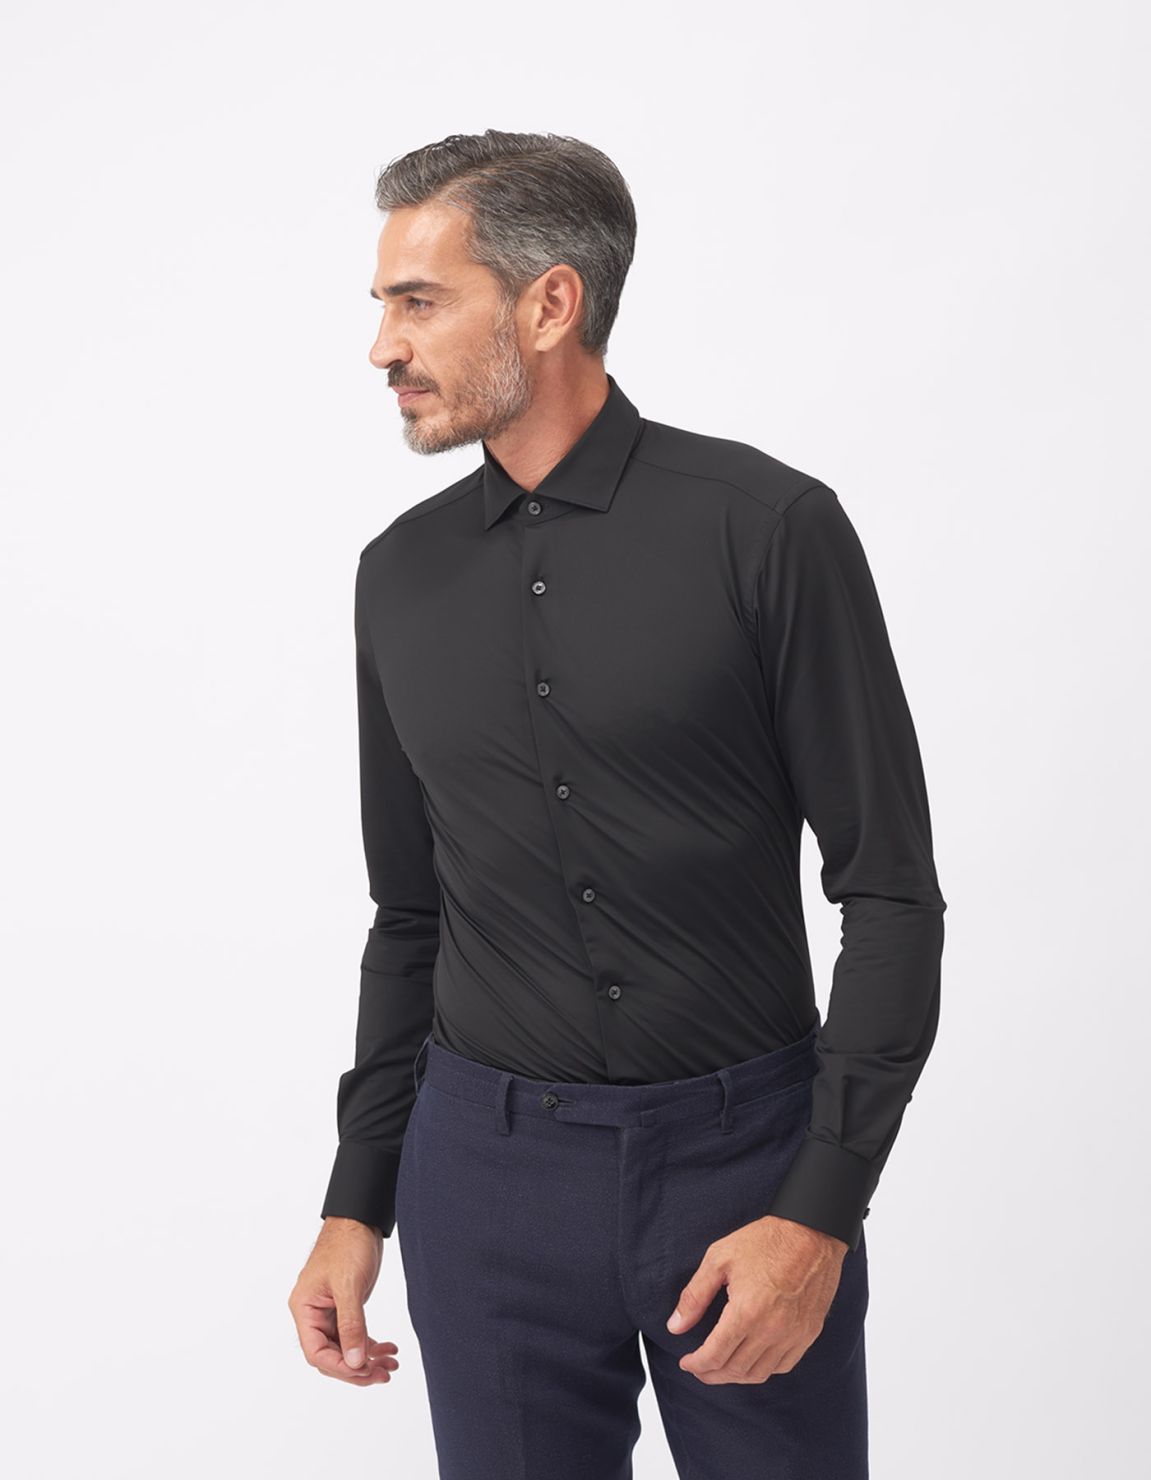 Shirt Collar small cutaway Black Twill Slim Fit 5